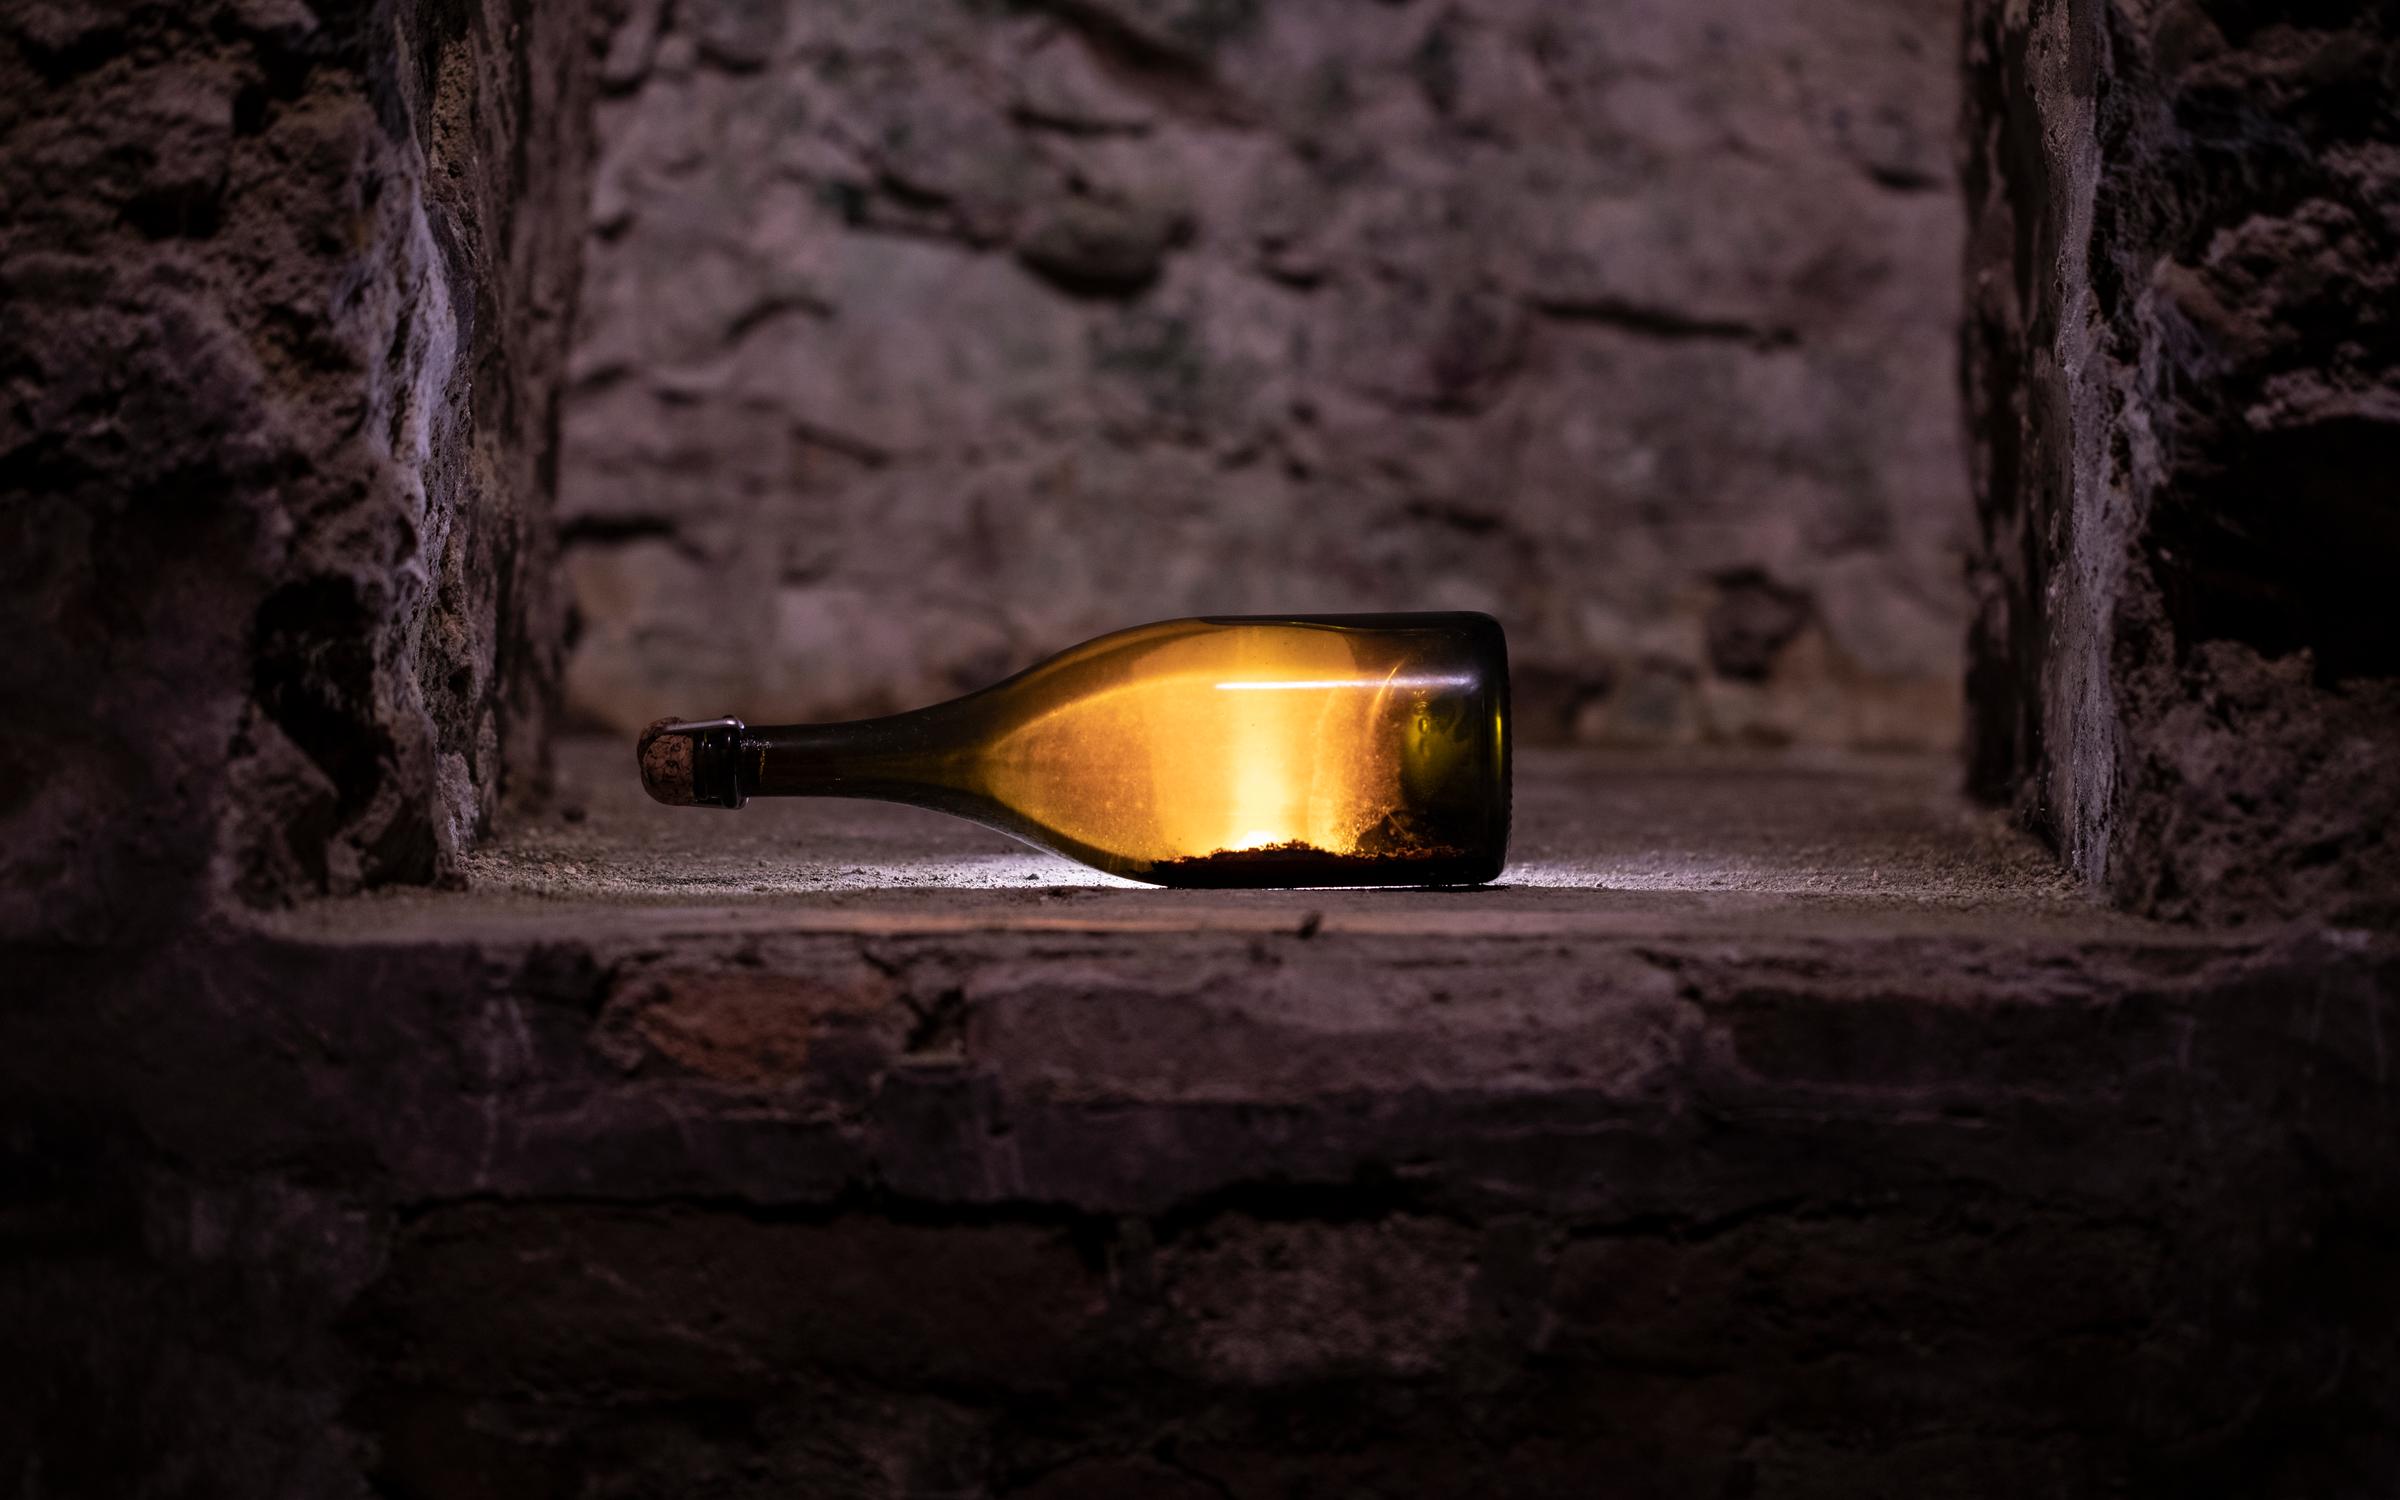 Producer profile: Dom Pérignon Champagne - Decanter